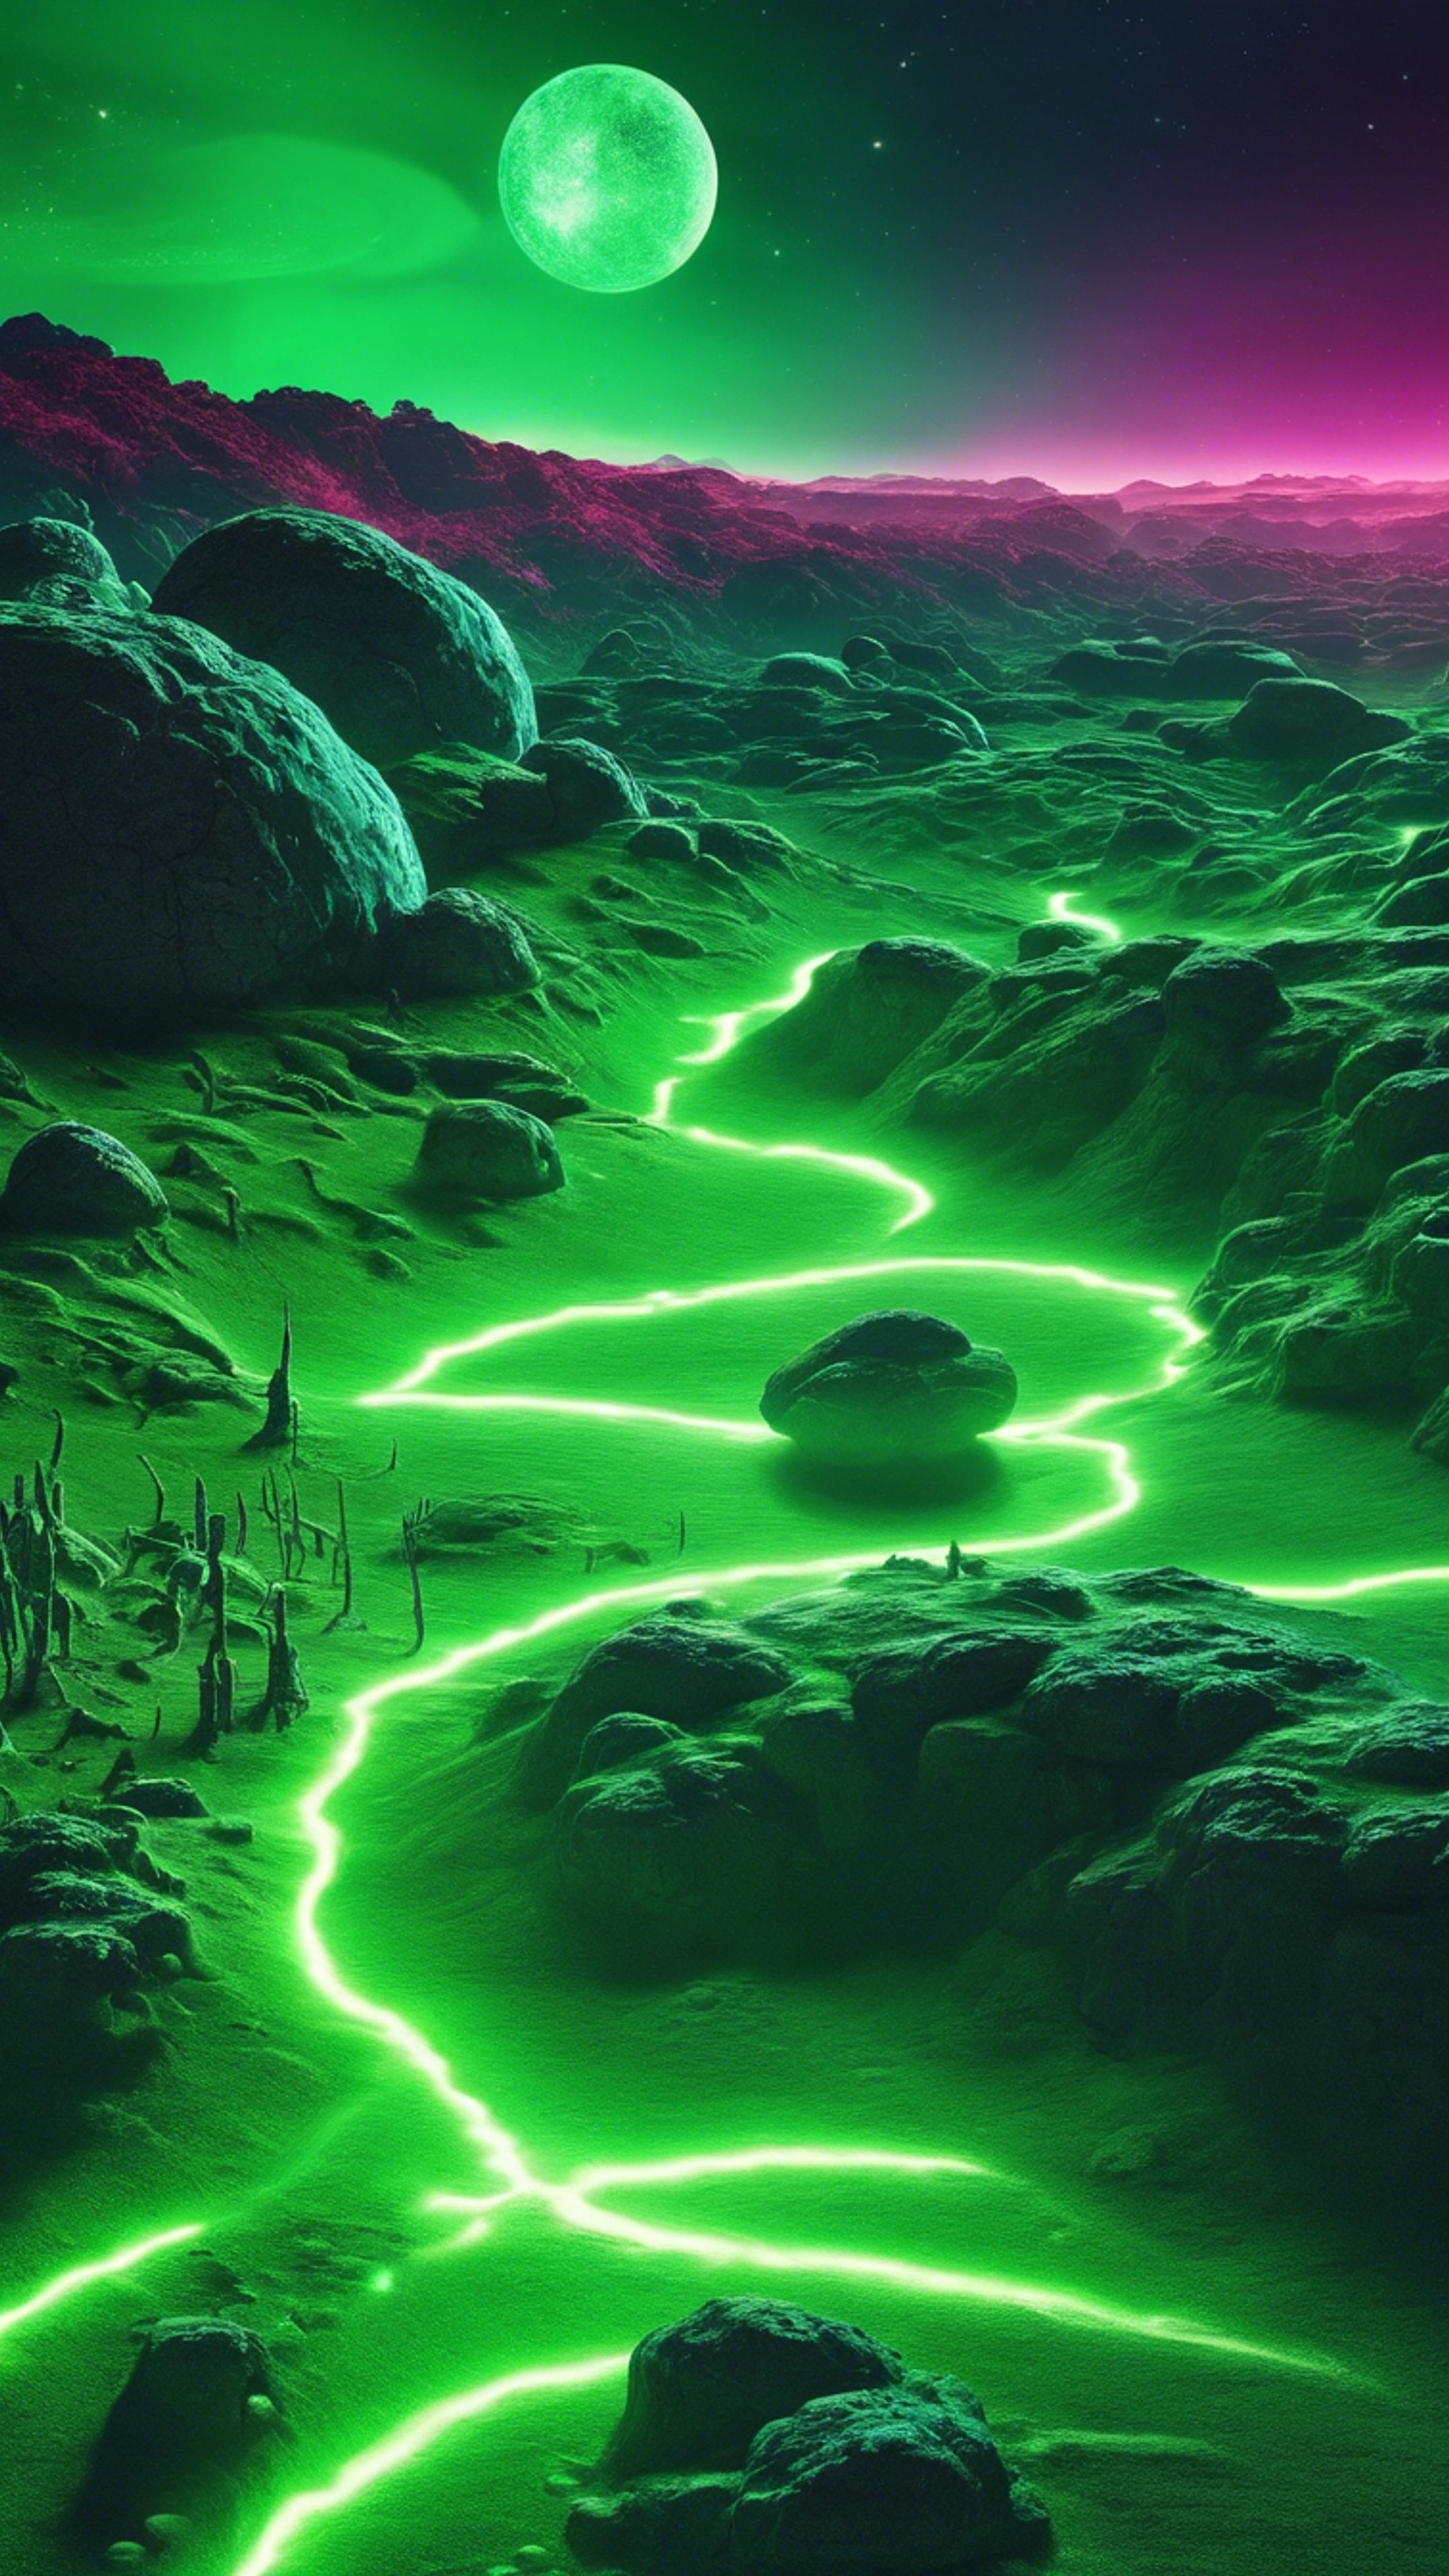 An alien planet landscape illuminated with cool neon green light. Tapeet[c1d7fd56055c47ca89e3]